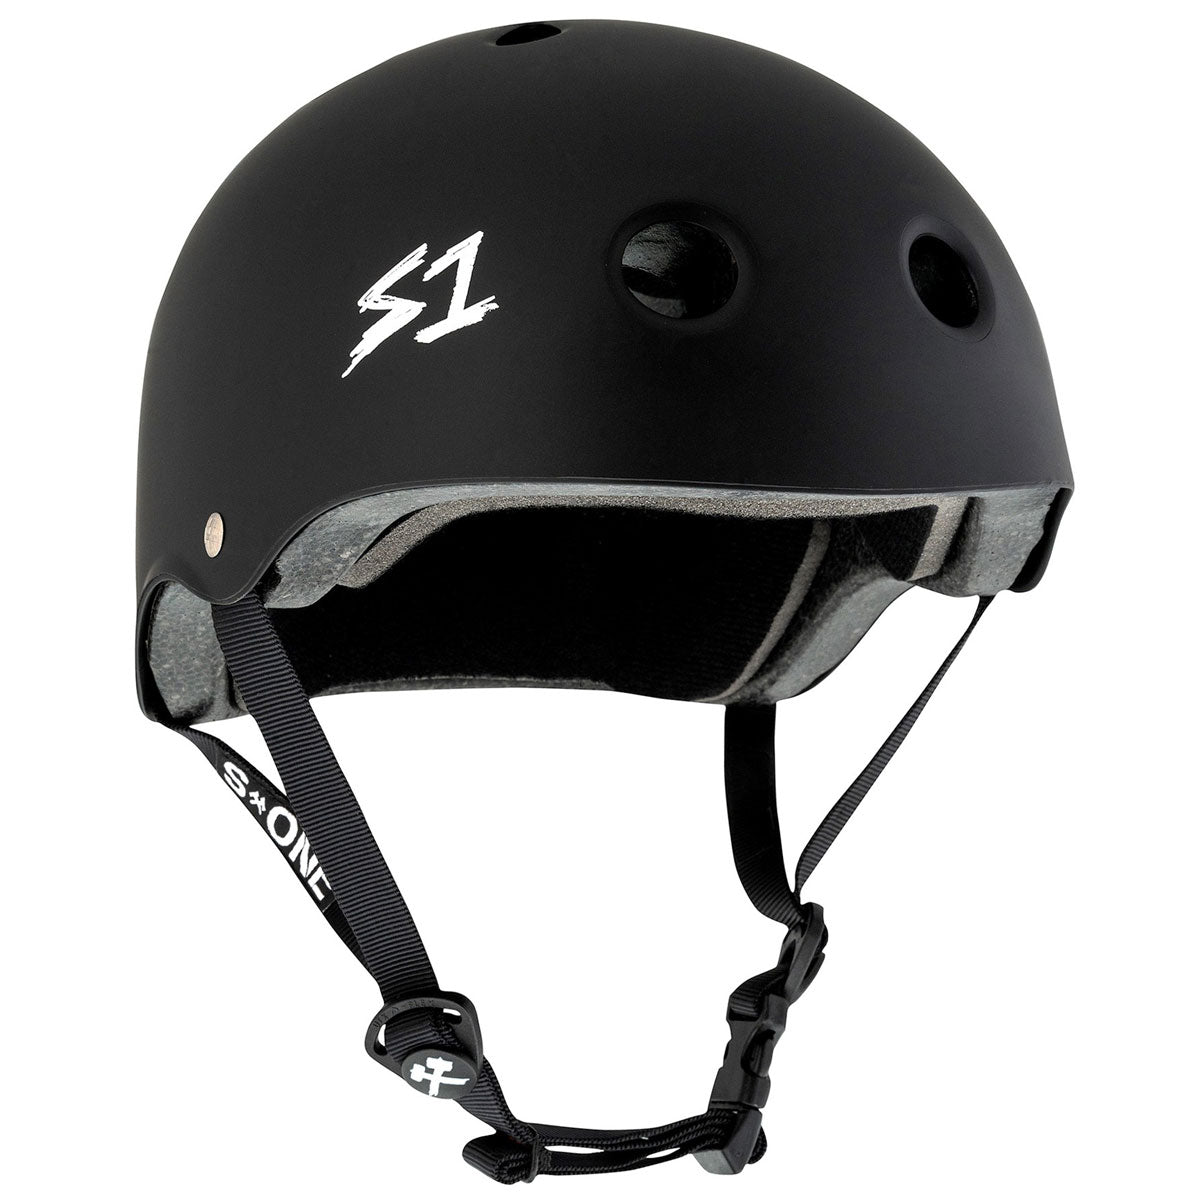 S-One Lifer Helmet - Black Matte image 1